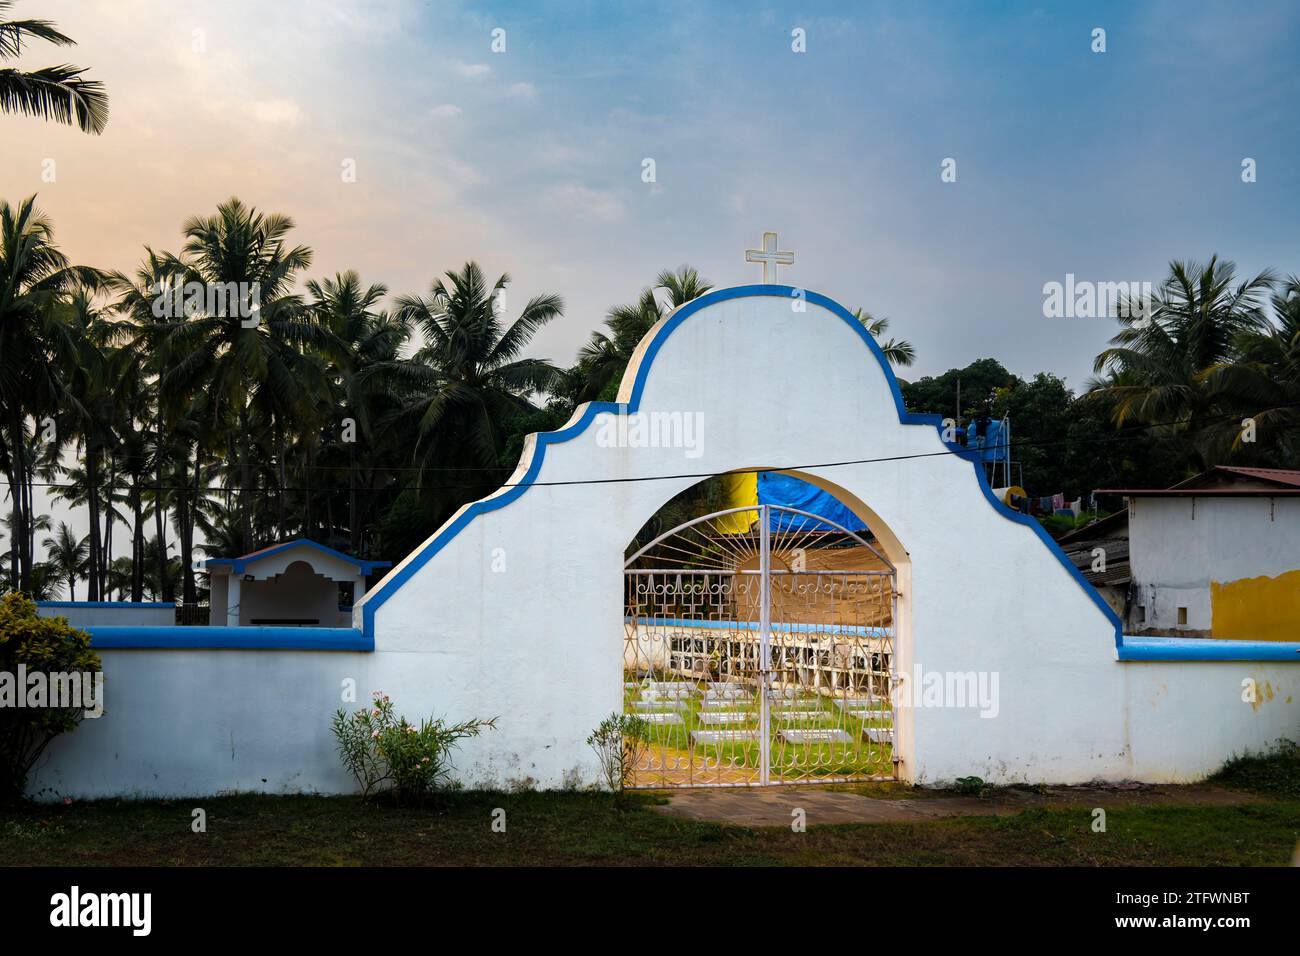 Agonda, Goa, India, un ingresso al cimitero cristiano con architettura in stile portoghese e indiano, solo editoriale. Foto Stock